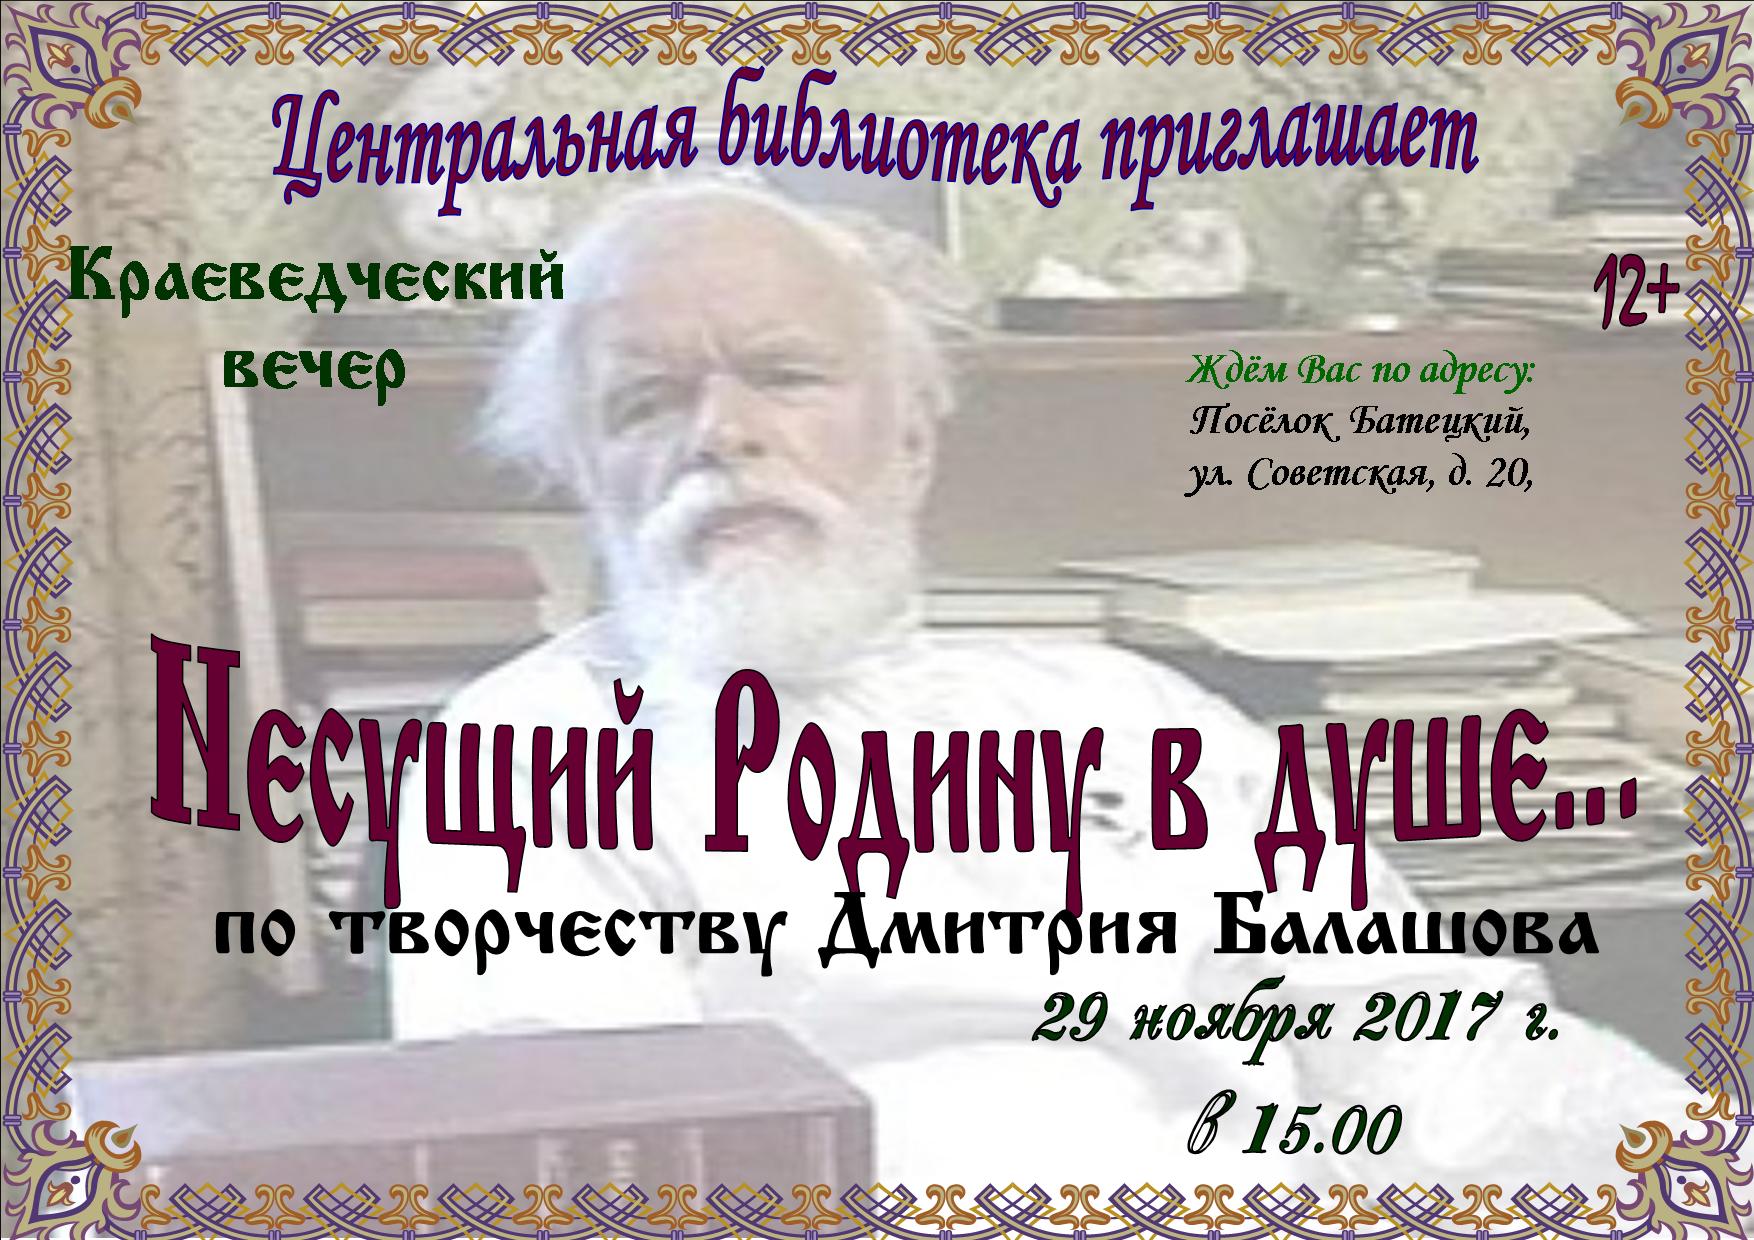 Дмитрий Балашов книжная выставка в библиотеке